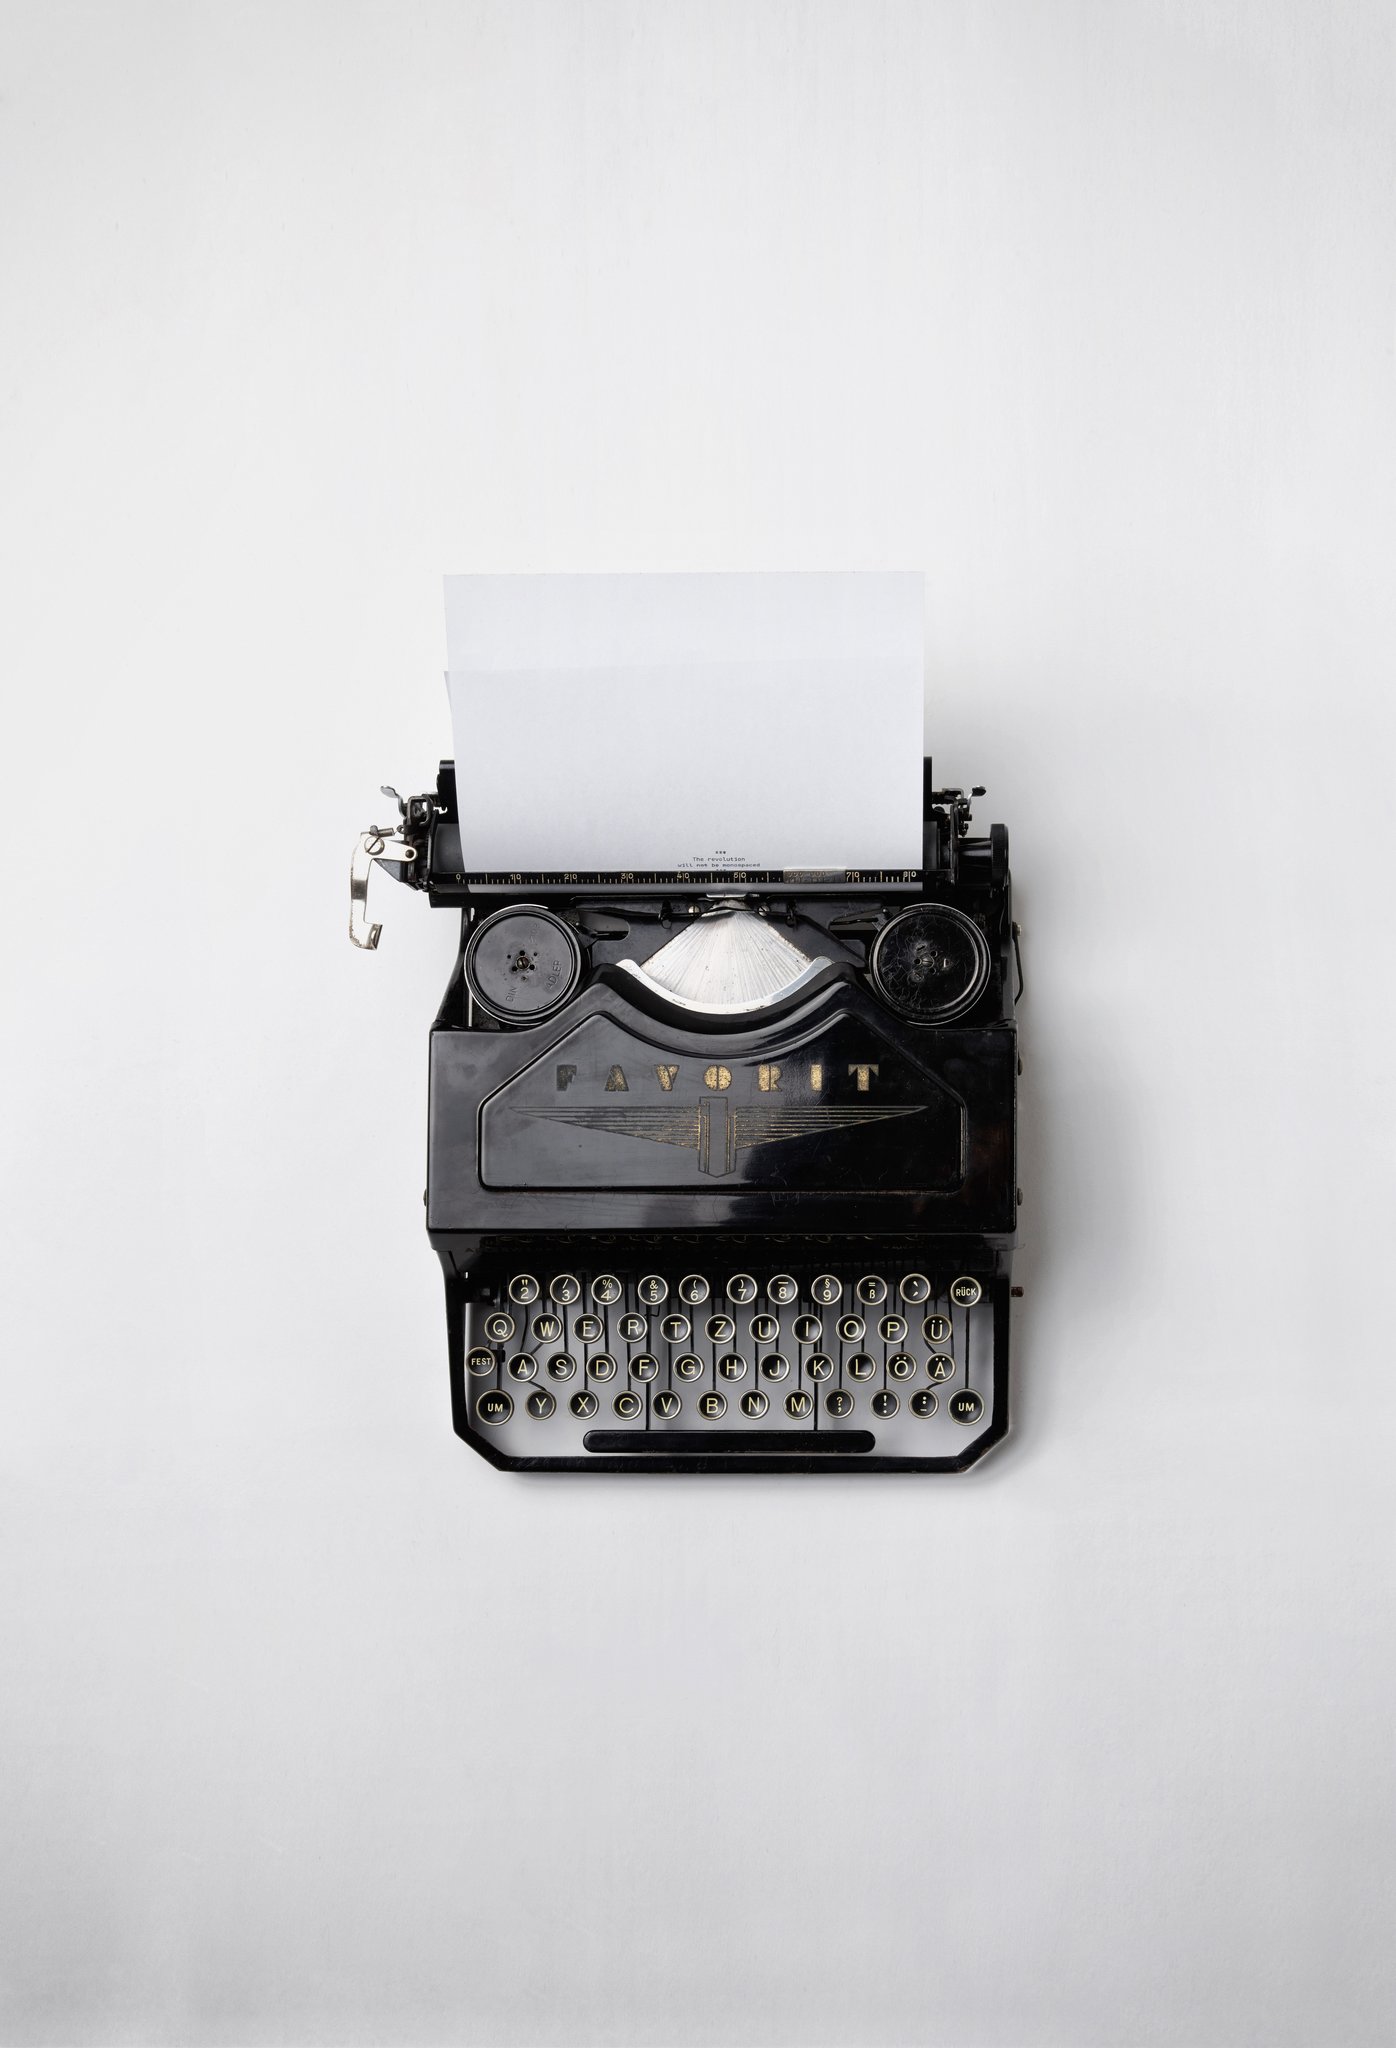 A typewriter. Source: Florian Klauer on Unsplash